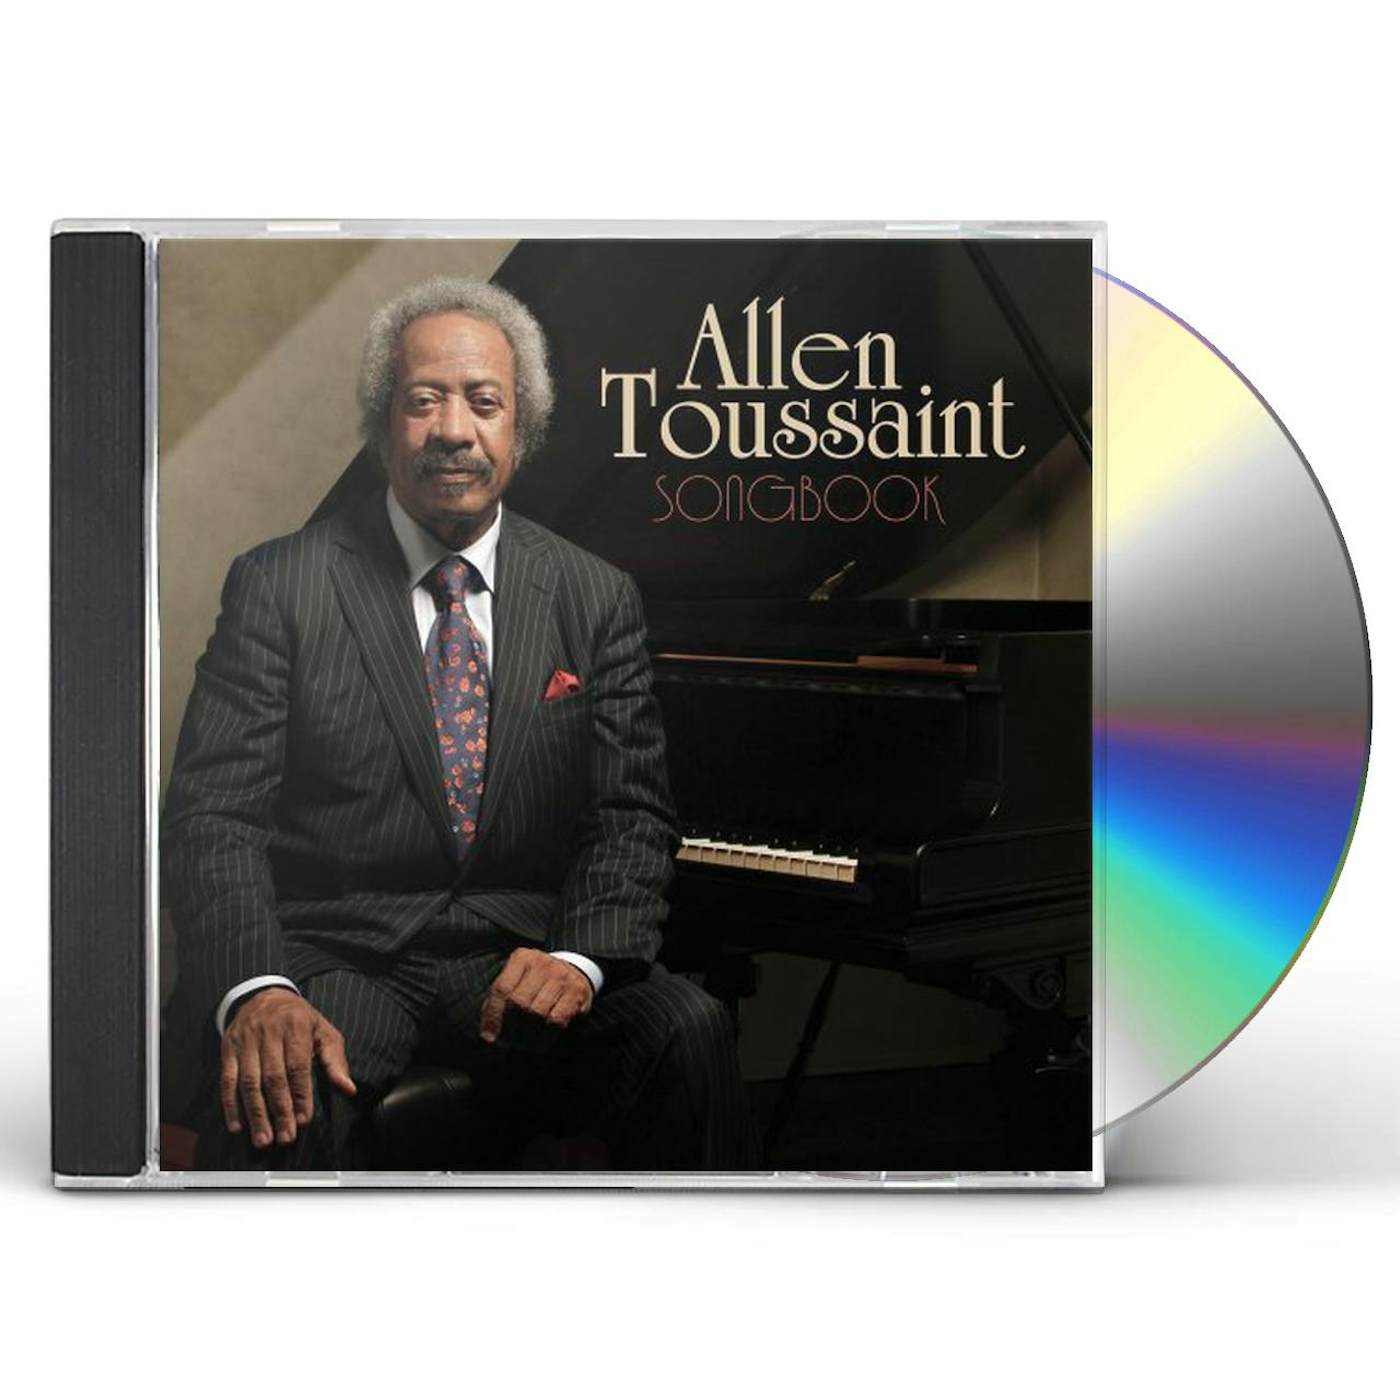 Allen Toussaint SONGBOOK CD